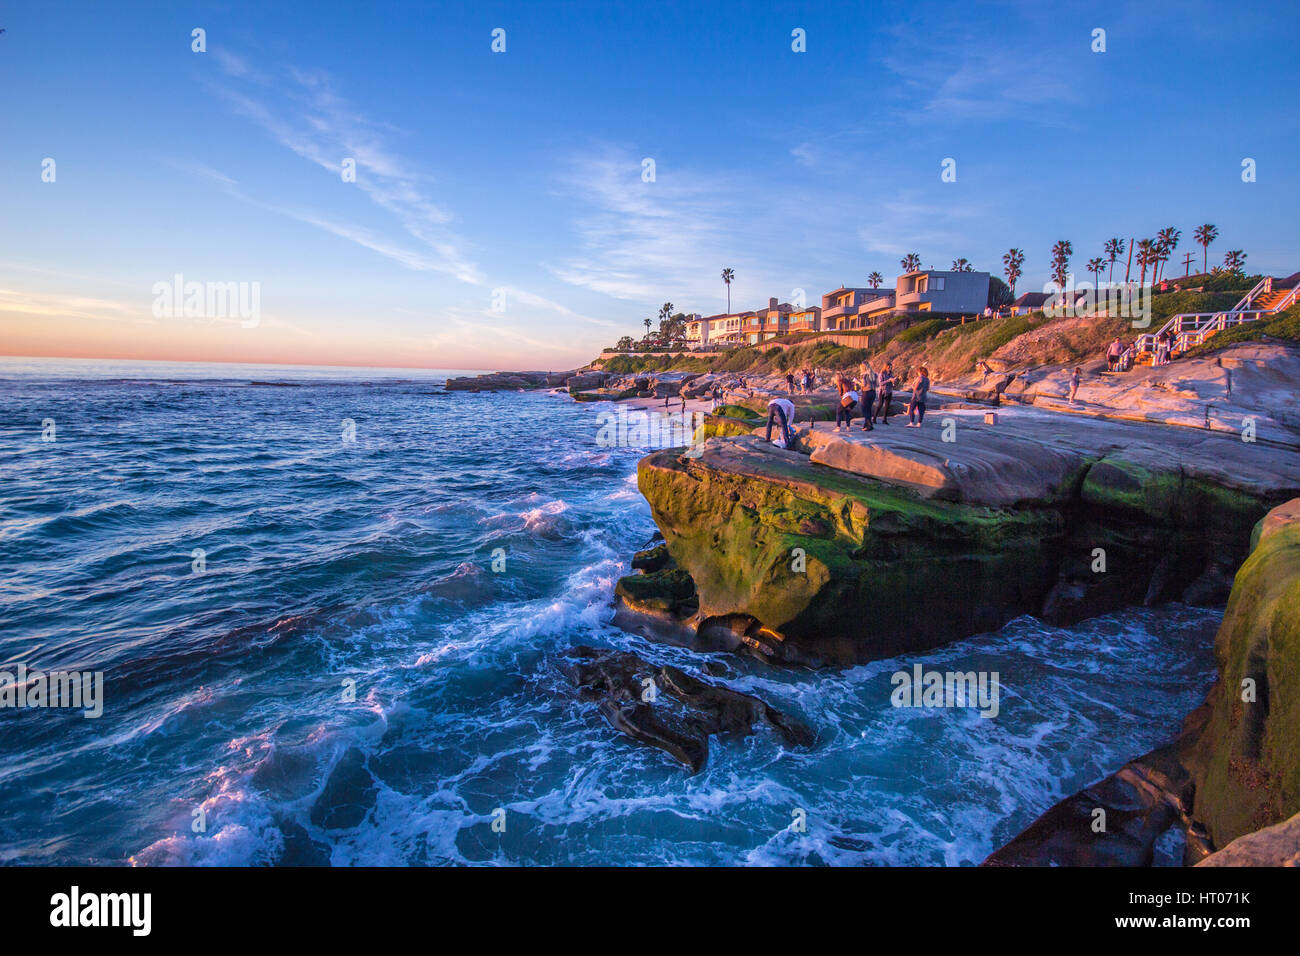 San Diego, où vous pourrez profiter de surfer sur l'océan pacifique. Un temps superbe et incroyable de personnes sympathiques. Banque D'Images